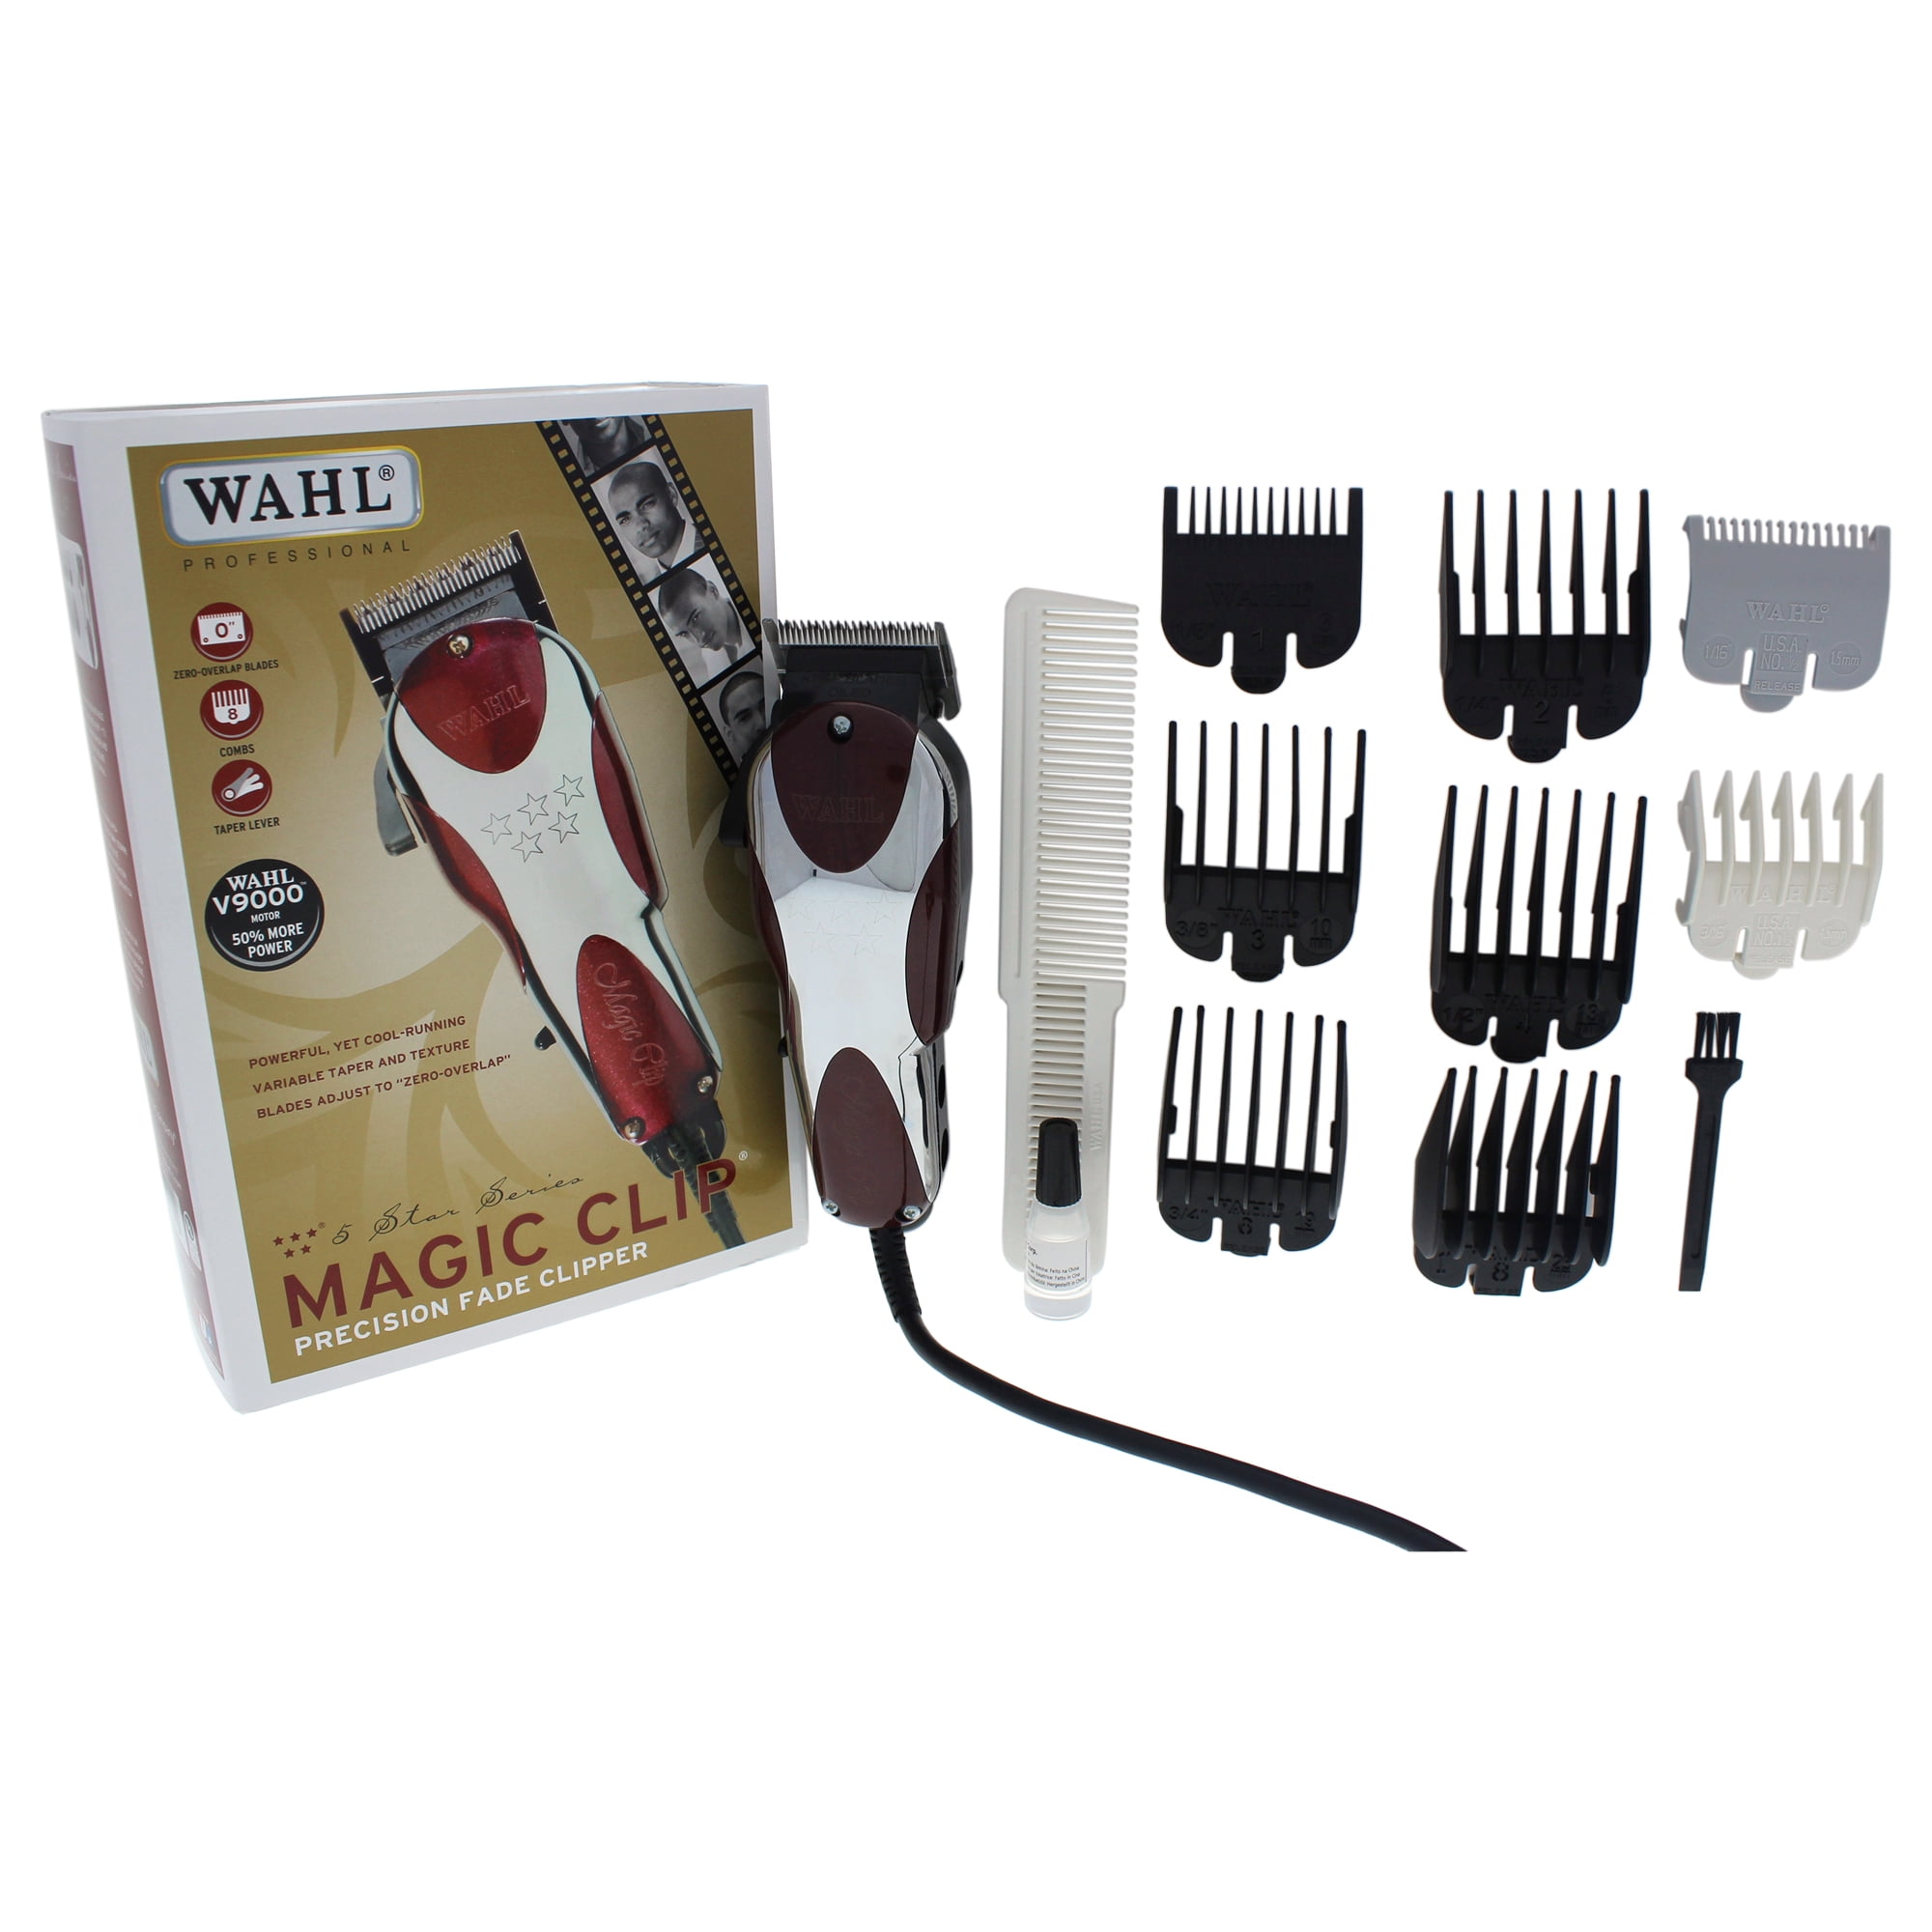 wahl 5 star magic clip clipper